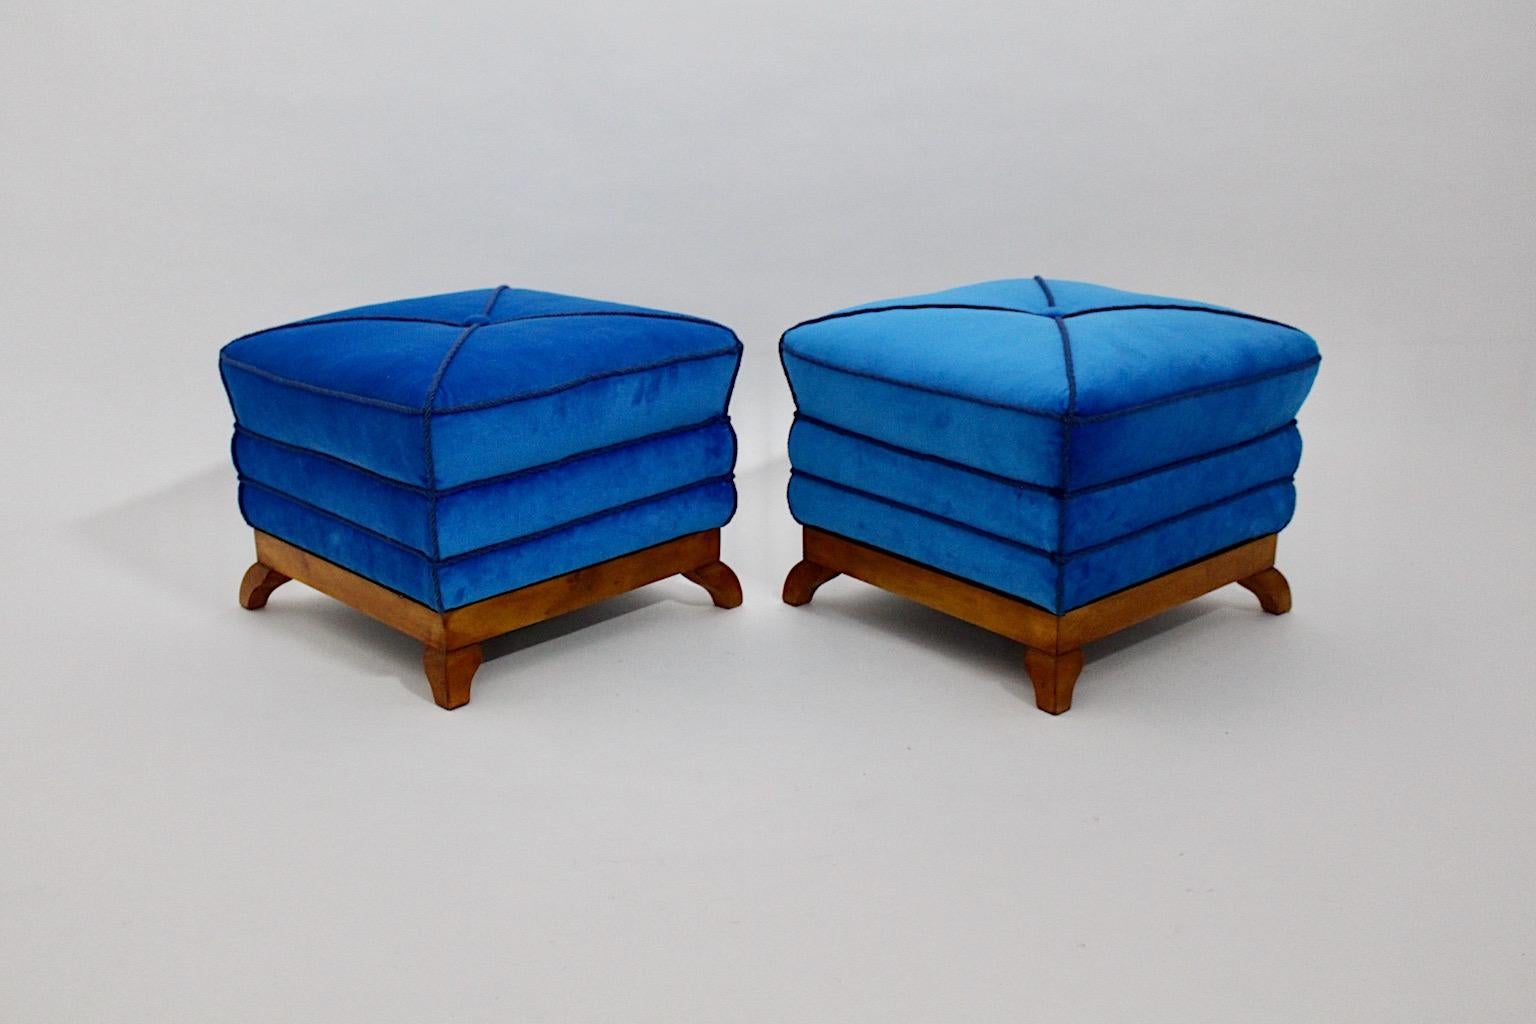 Art Deco Vintage Paar Hocker, Poufs oder Tabouret Dagobert Peche Stil aus Ahorn und blauem Samt erstellt und hergestellt 1920er Jahre Österreich.
Wunderschöne Hocker in eckiger Pagodenform, neu gepolstert und aufgearbeitet, die Samt in erstaunlicher